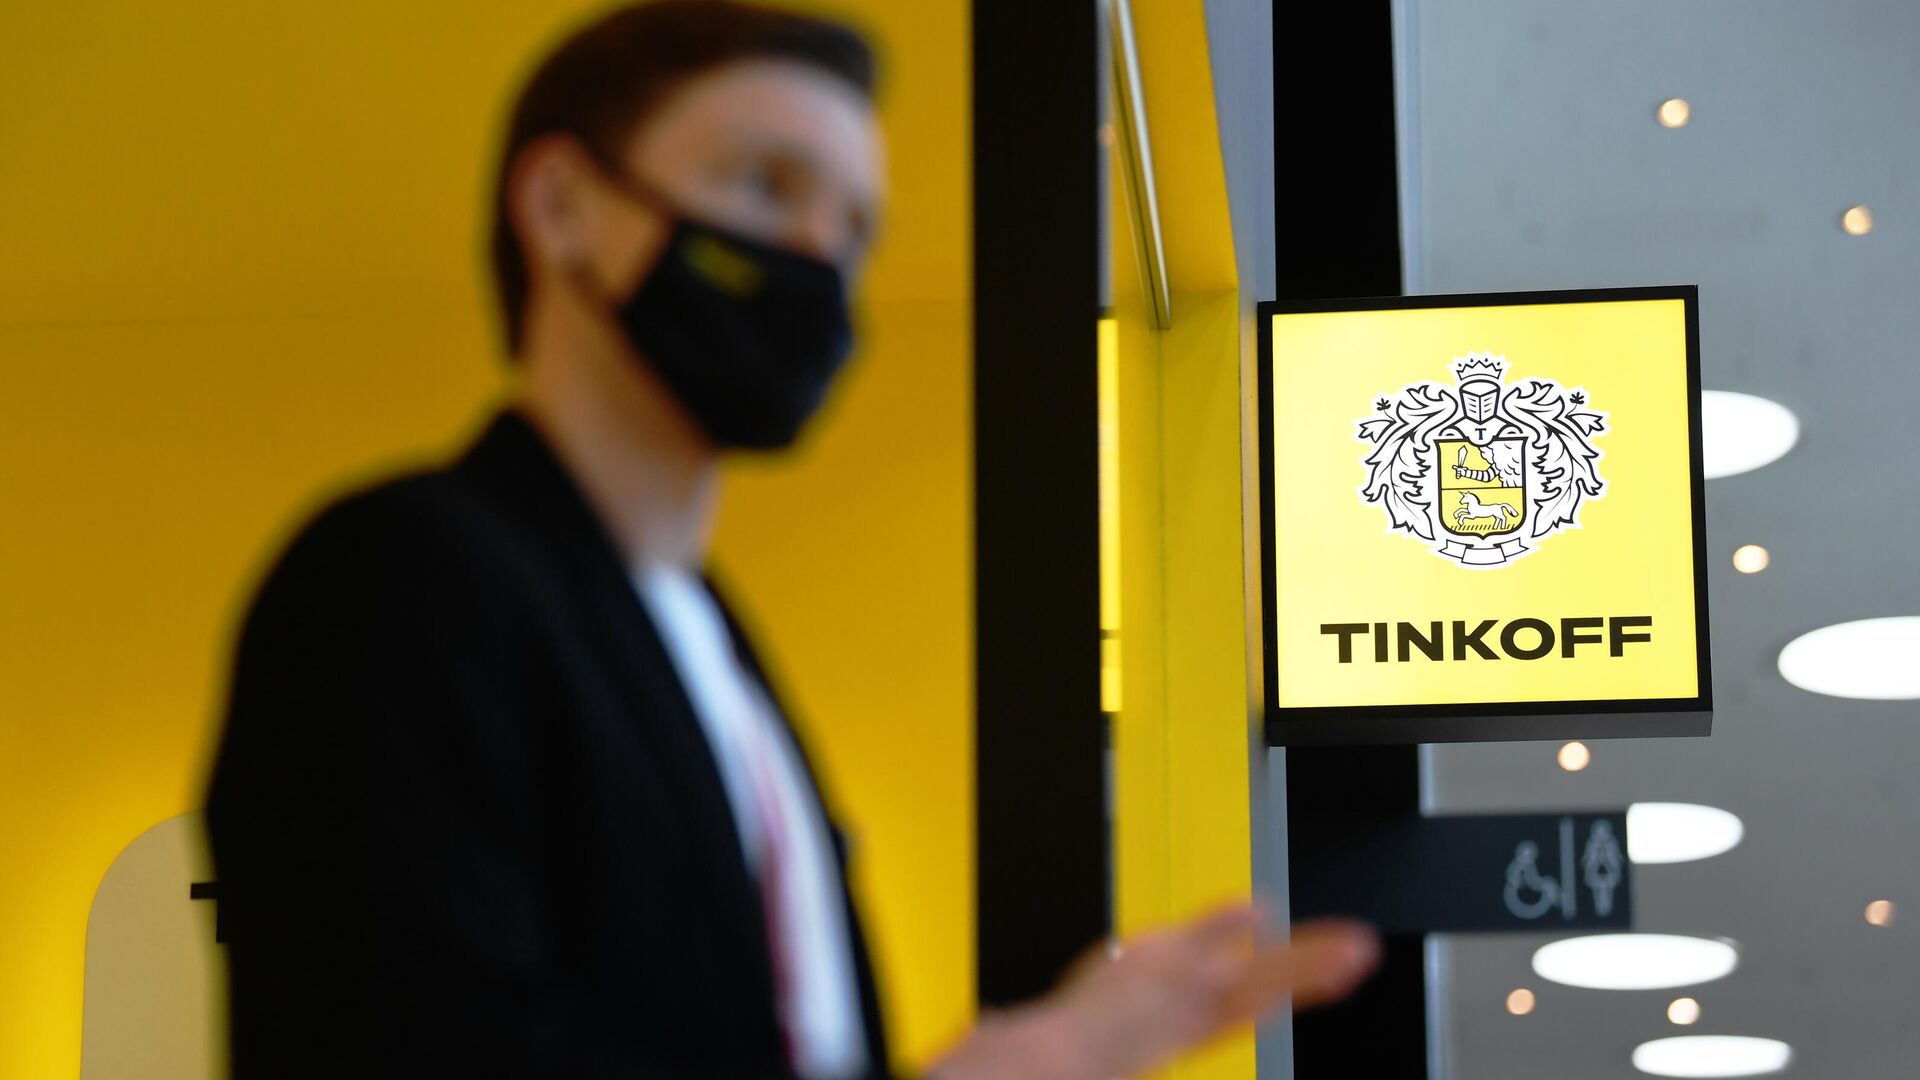 "Тинькофф банк" планирует запустить ипотеку в конце октября